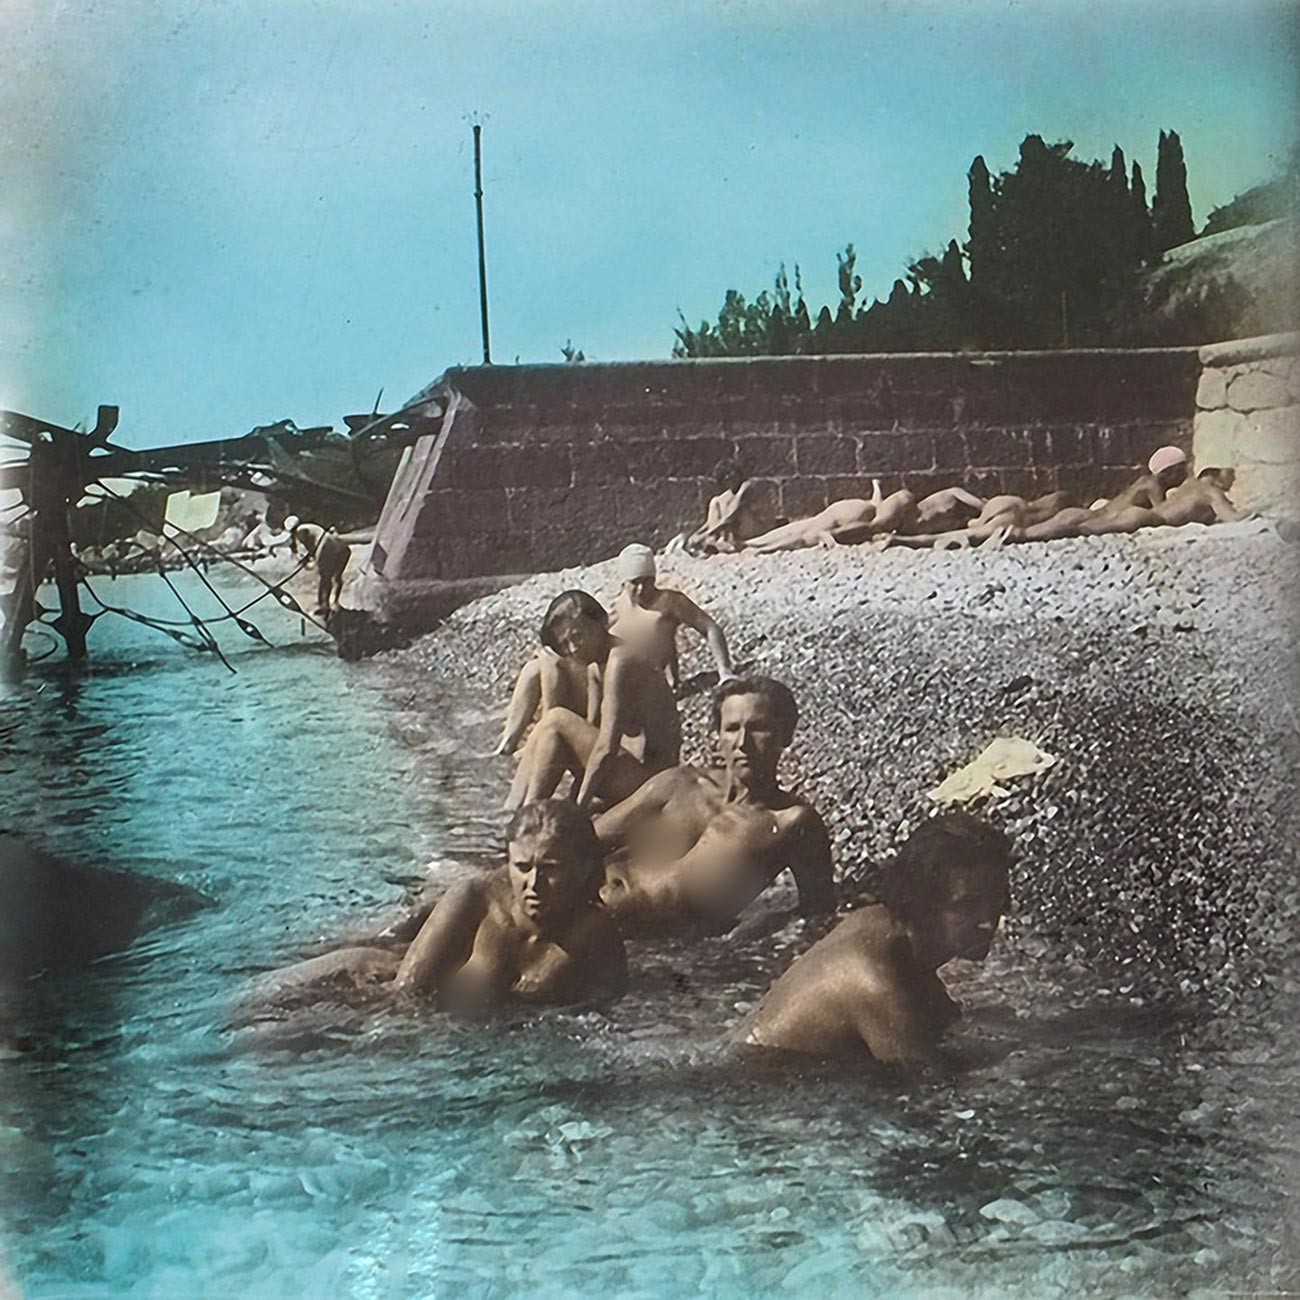 Travailleuses et kolkhoziennes sur une plage de Crimée, en 1931

